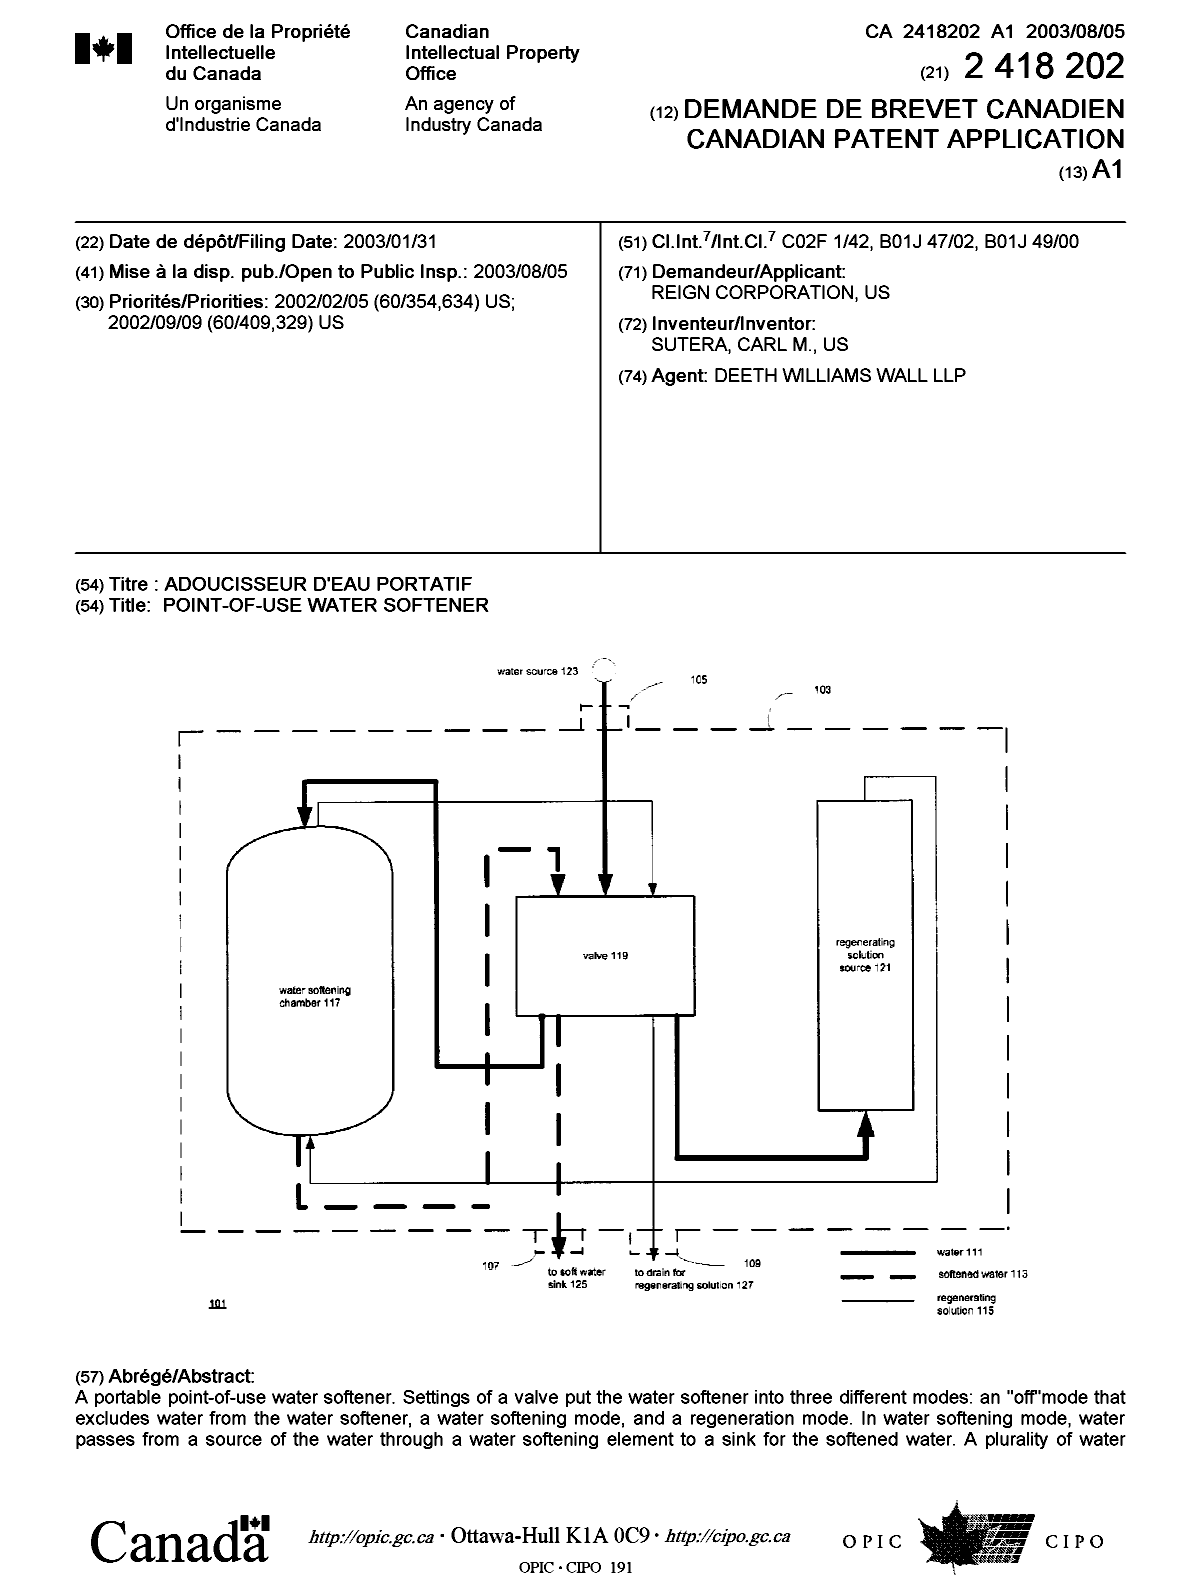 Document de brevet canadien 2418202. Page couverture 20030715. Image 1 de 2